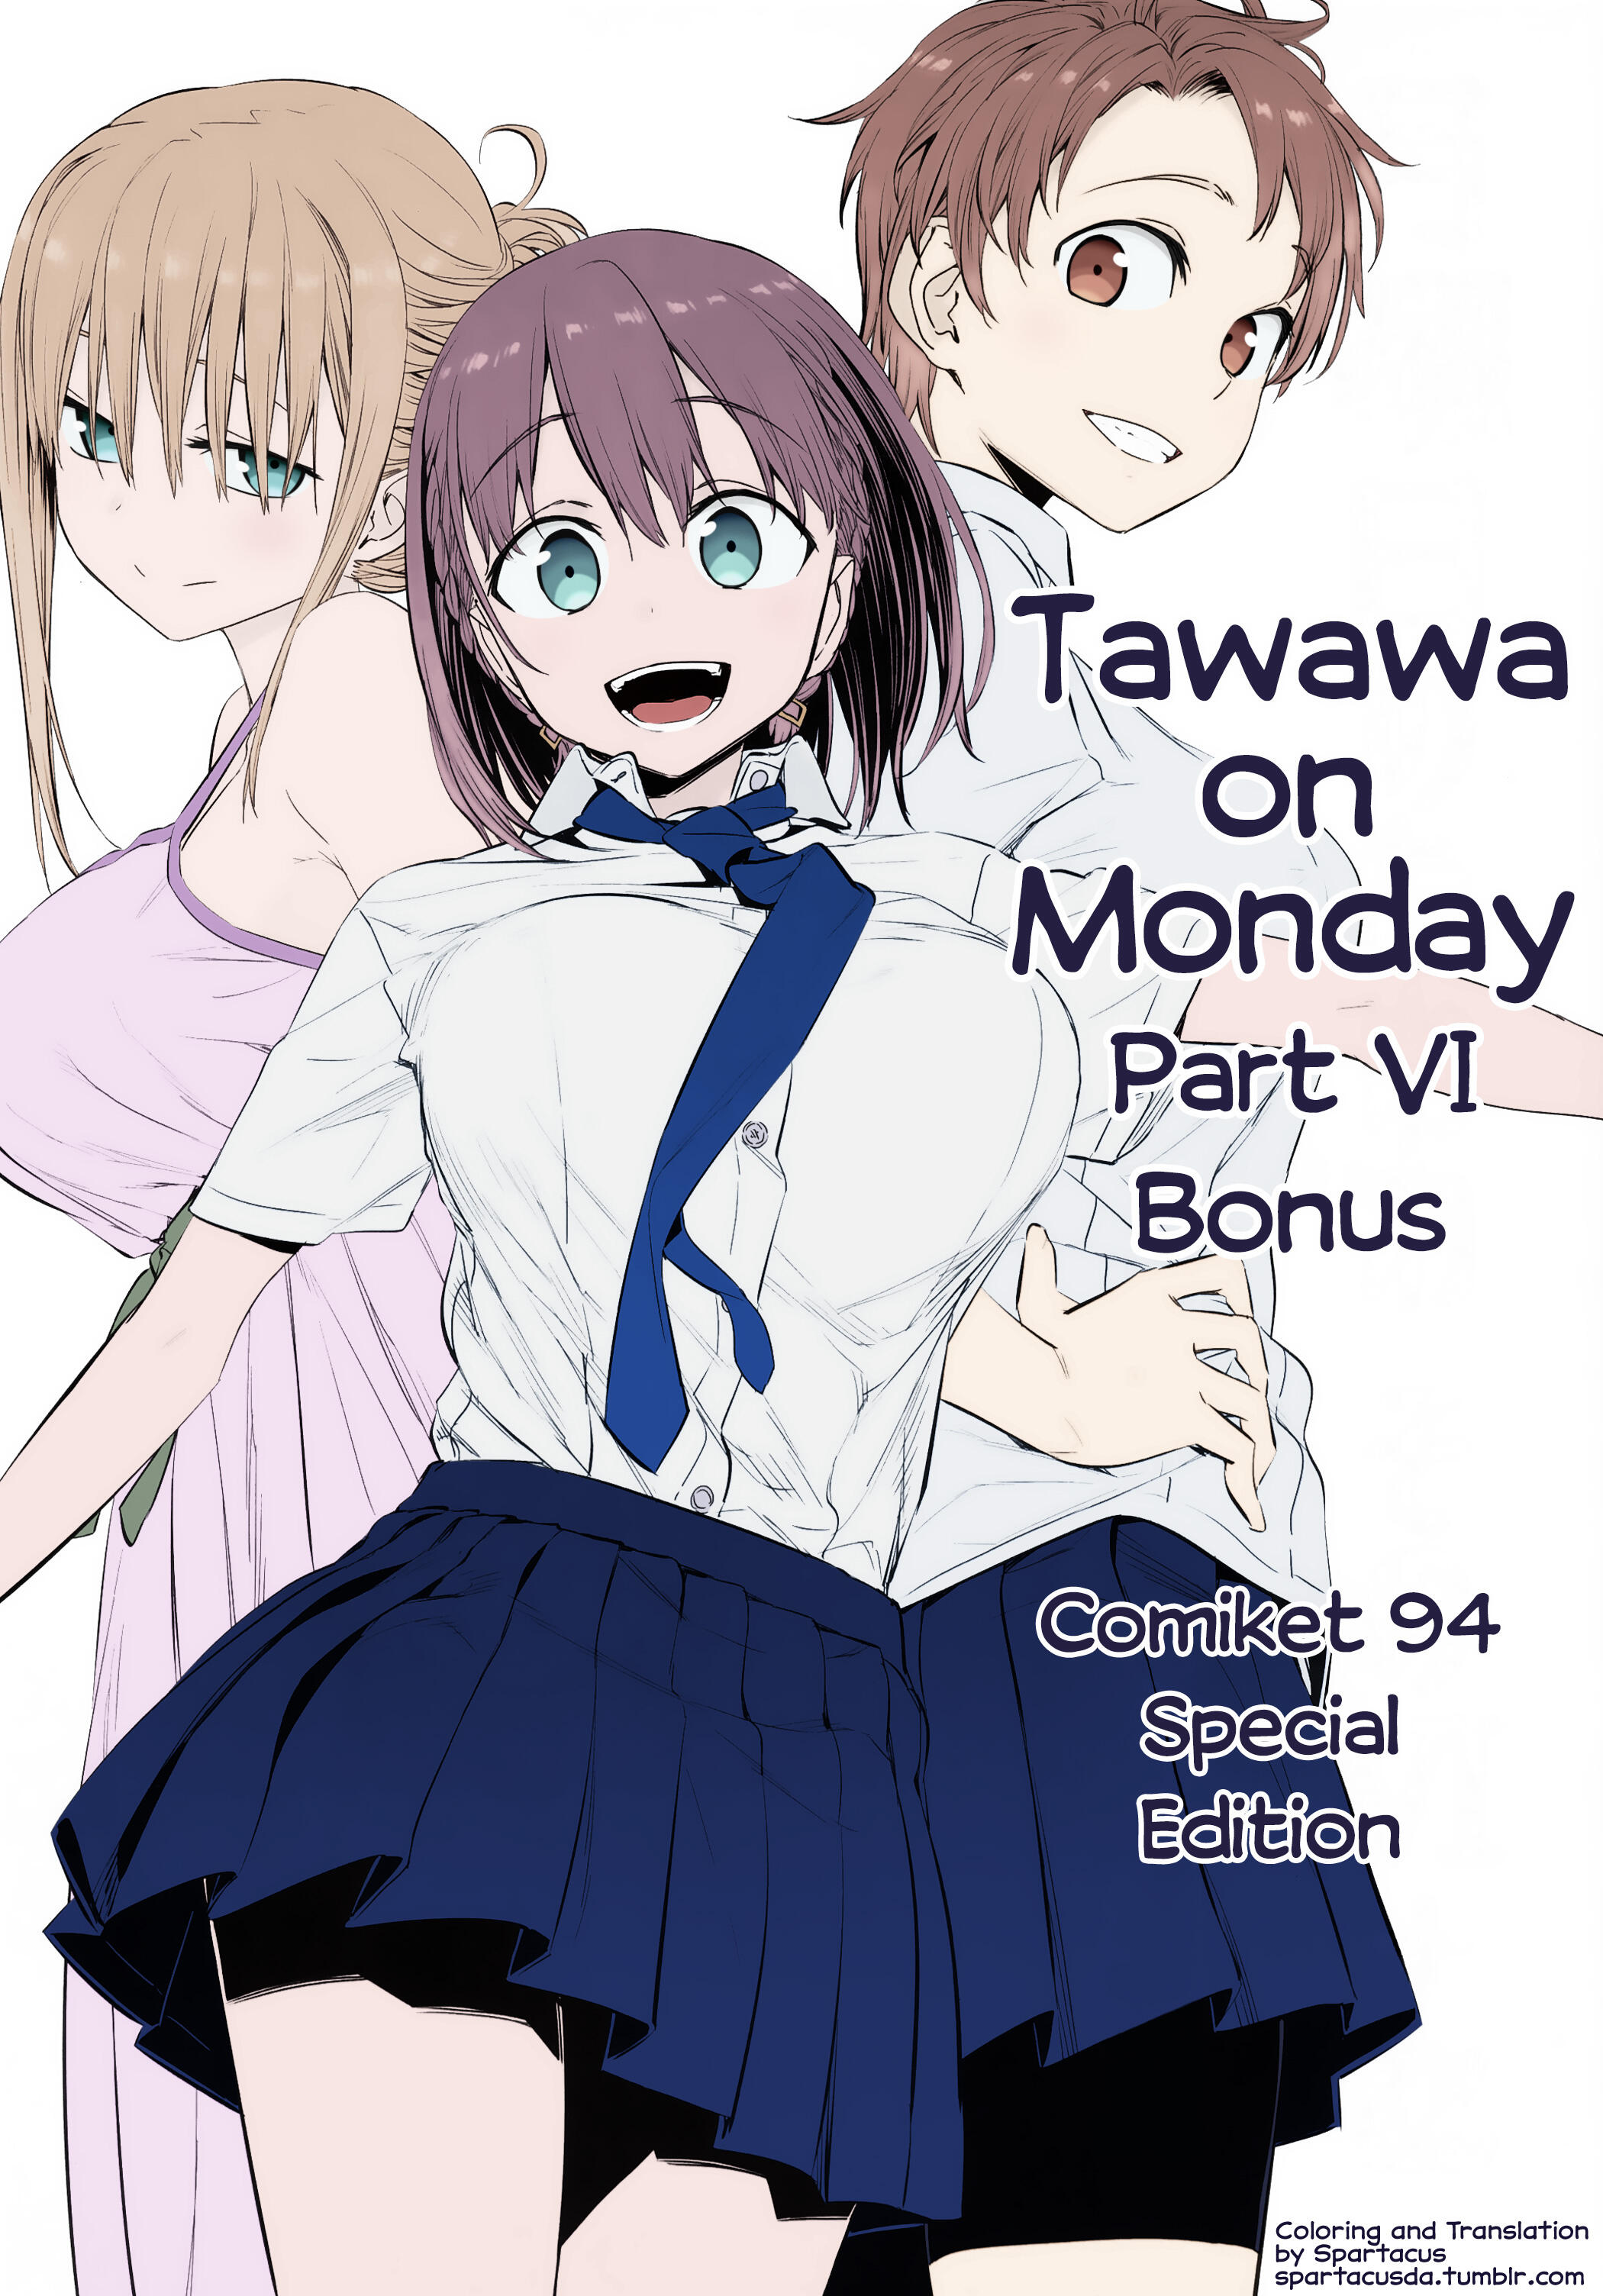 Read Getsuyoubi No Tawawa (Twitter Webcomic) (Fan Colored) Vol.1 Chapter 2:  Part I: Manga on Mangakakalot